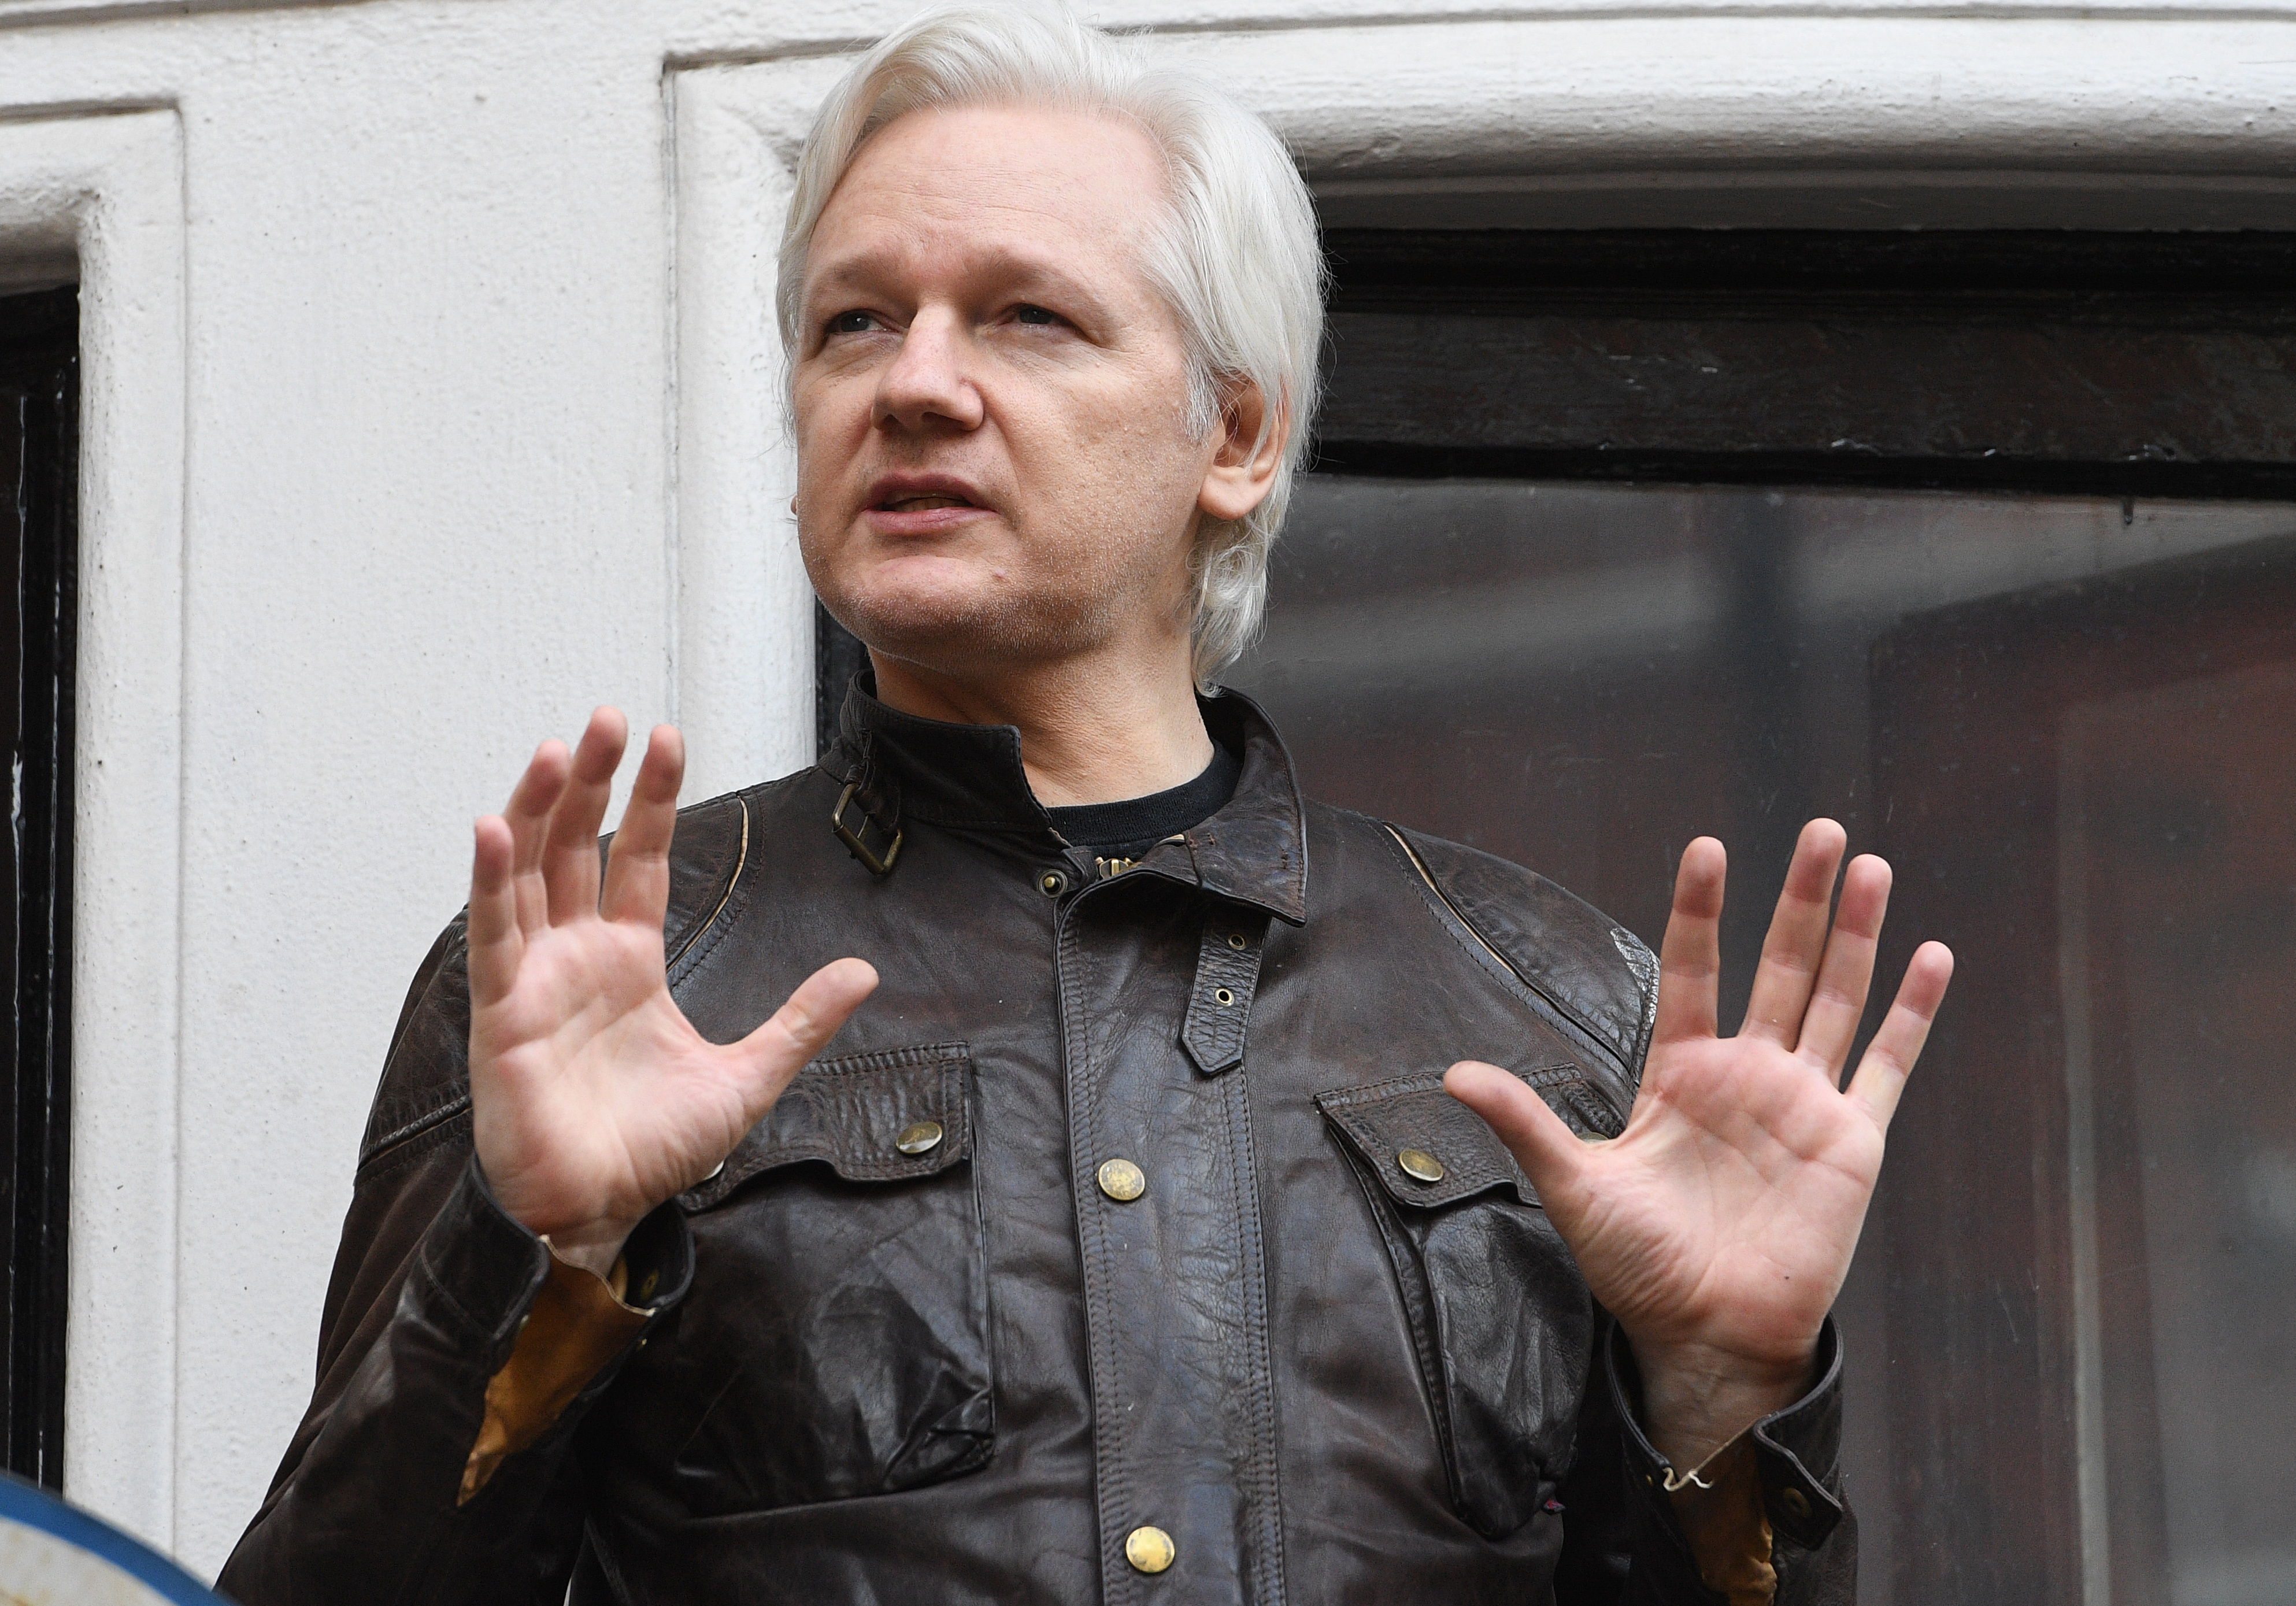 El fundador de Wikileaks, Julian Assange, no será extraditado de Gran Bretaña a Estados Unidos para enfrentar cargos de espionaje por la publicación de documentos militares secretos. (Foto Prensa Libre: EFE)